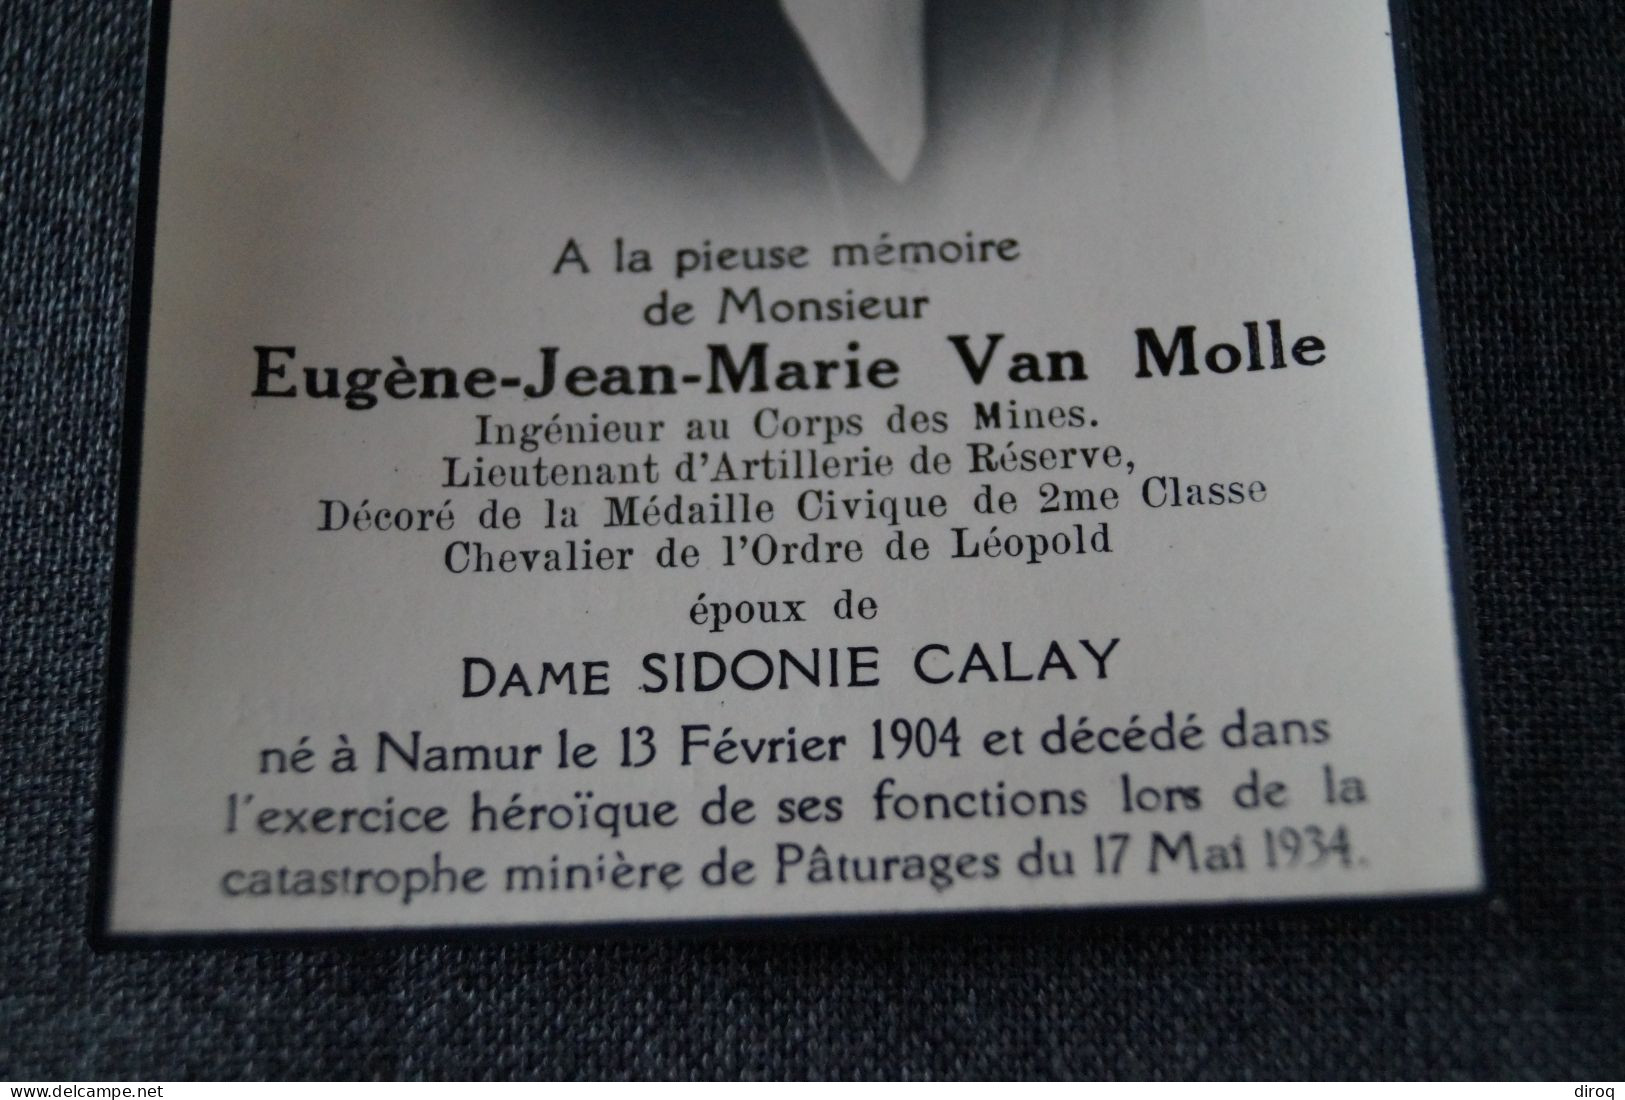 Eugène Jean-Marie Van Molle,Mineurs, 1904 - 1934 à Paturage - Esquela